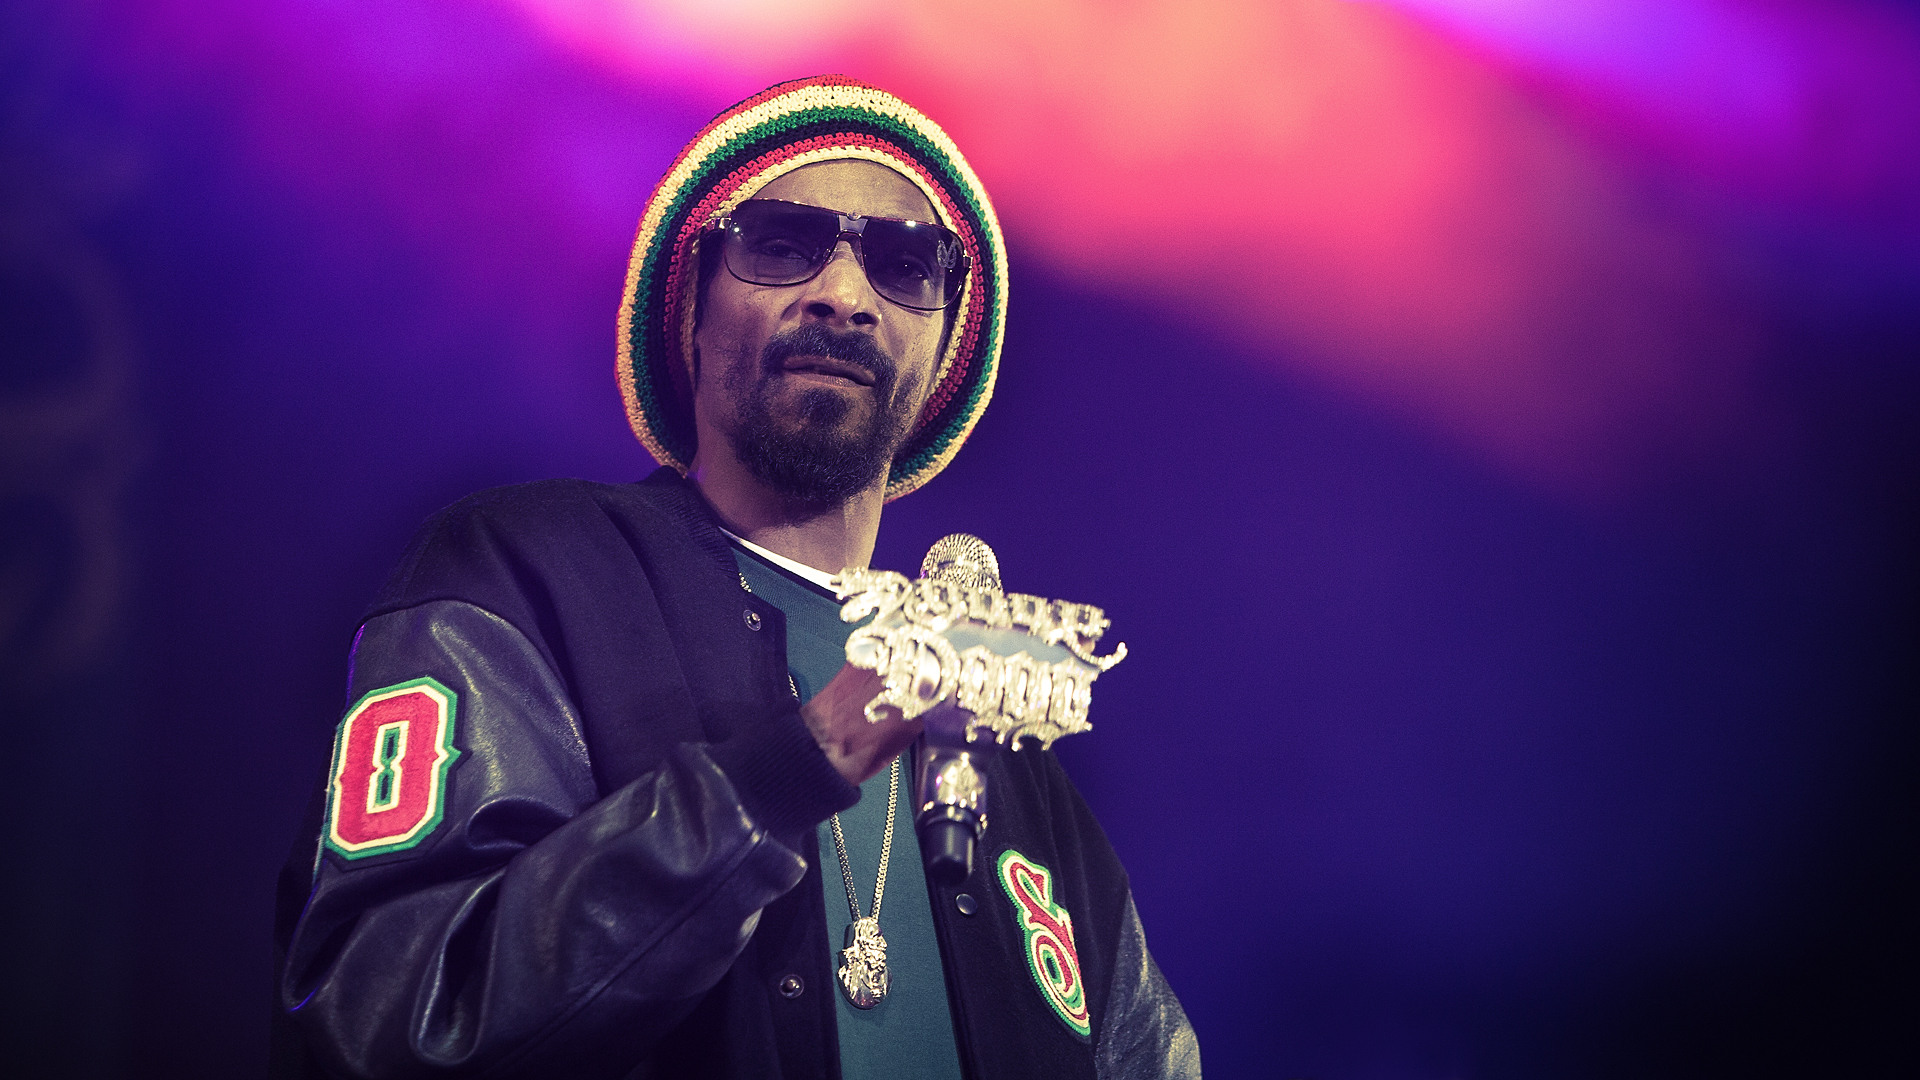 Snoop Dogg Wallpaper 4usky